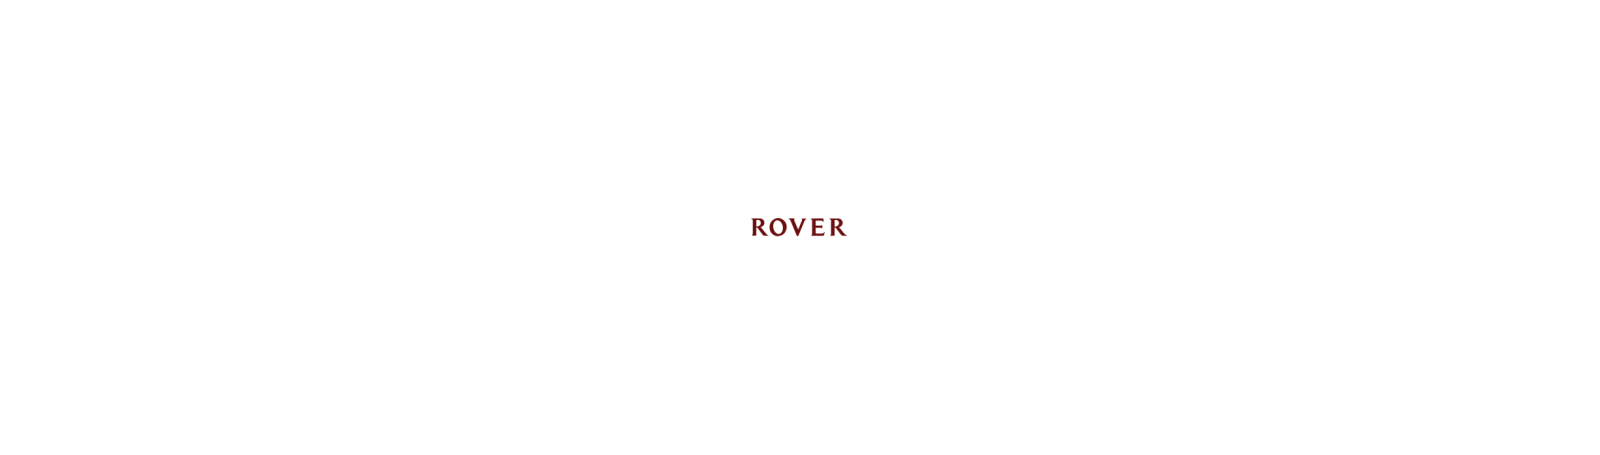 Rover 75